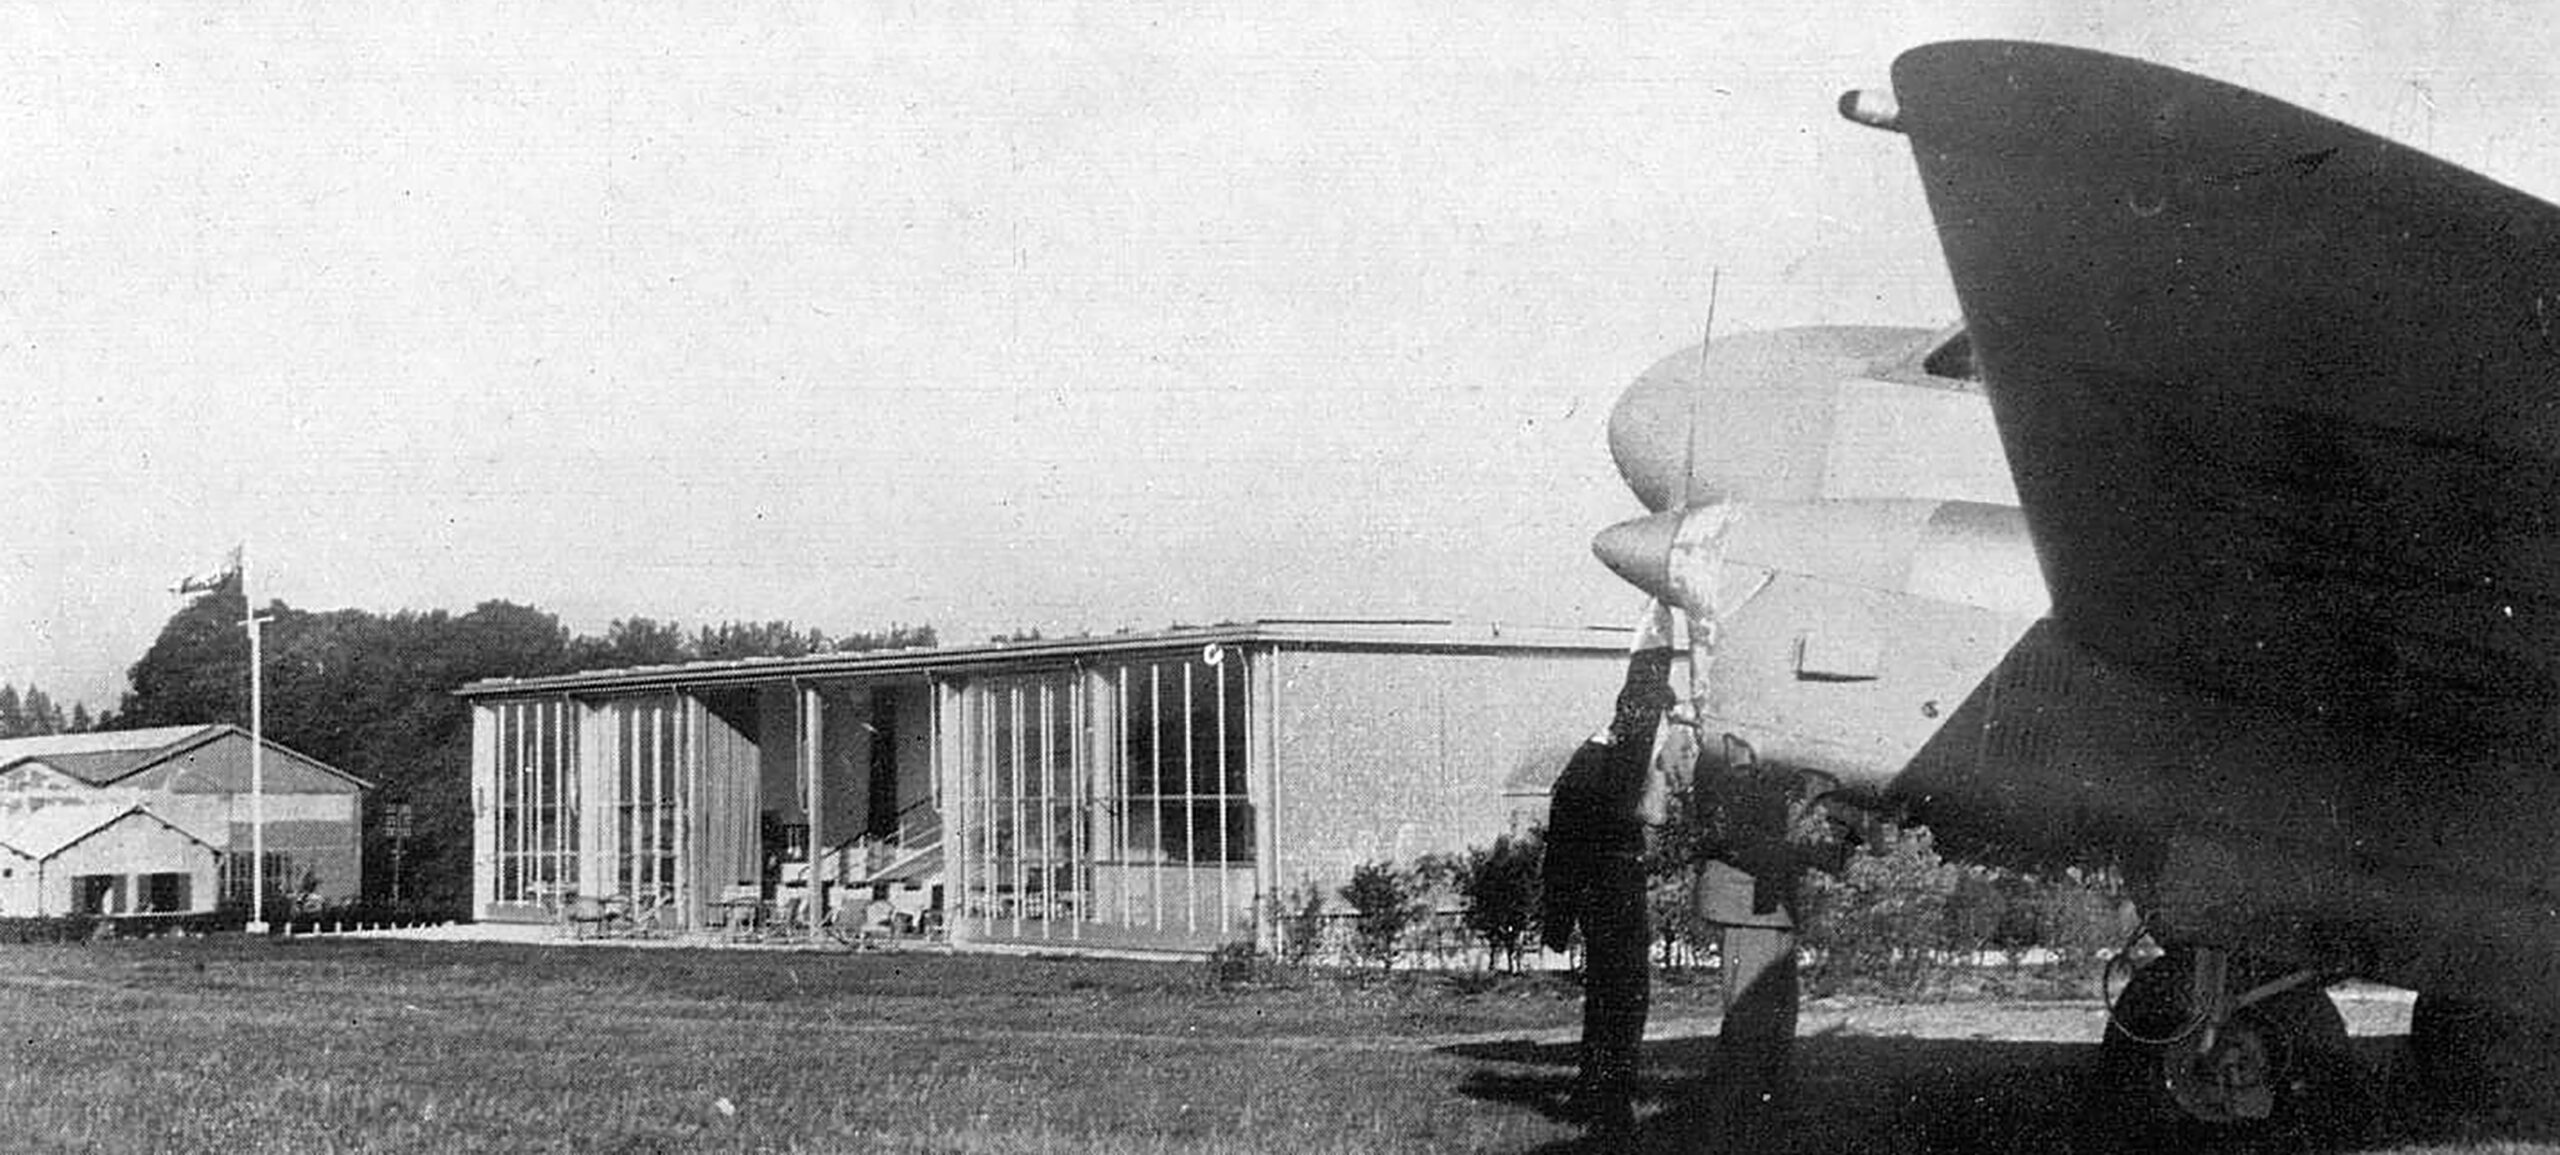 Aéroclub Roland-Garros, Buc, 1935 (Jean Prouvé, avec Eugène Beaudouin et Marcel Lods, arch.) paru dans <i>L’Architecture,</i> n° 4, avril 1938.